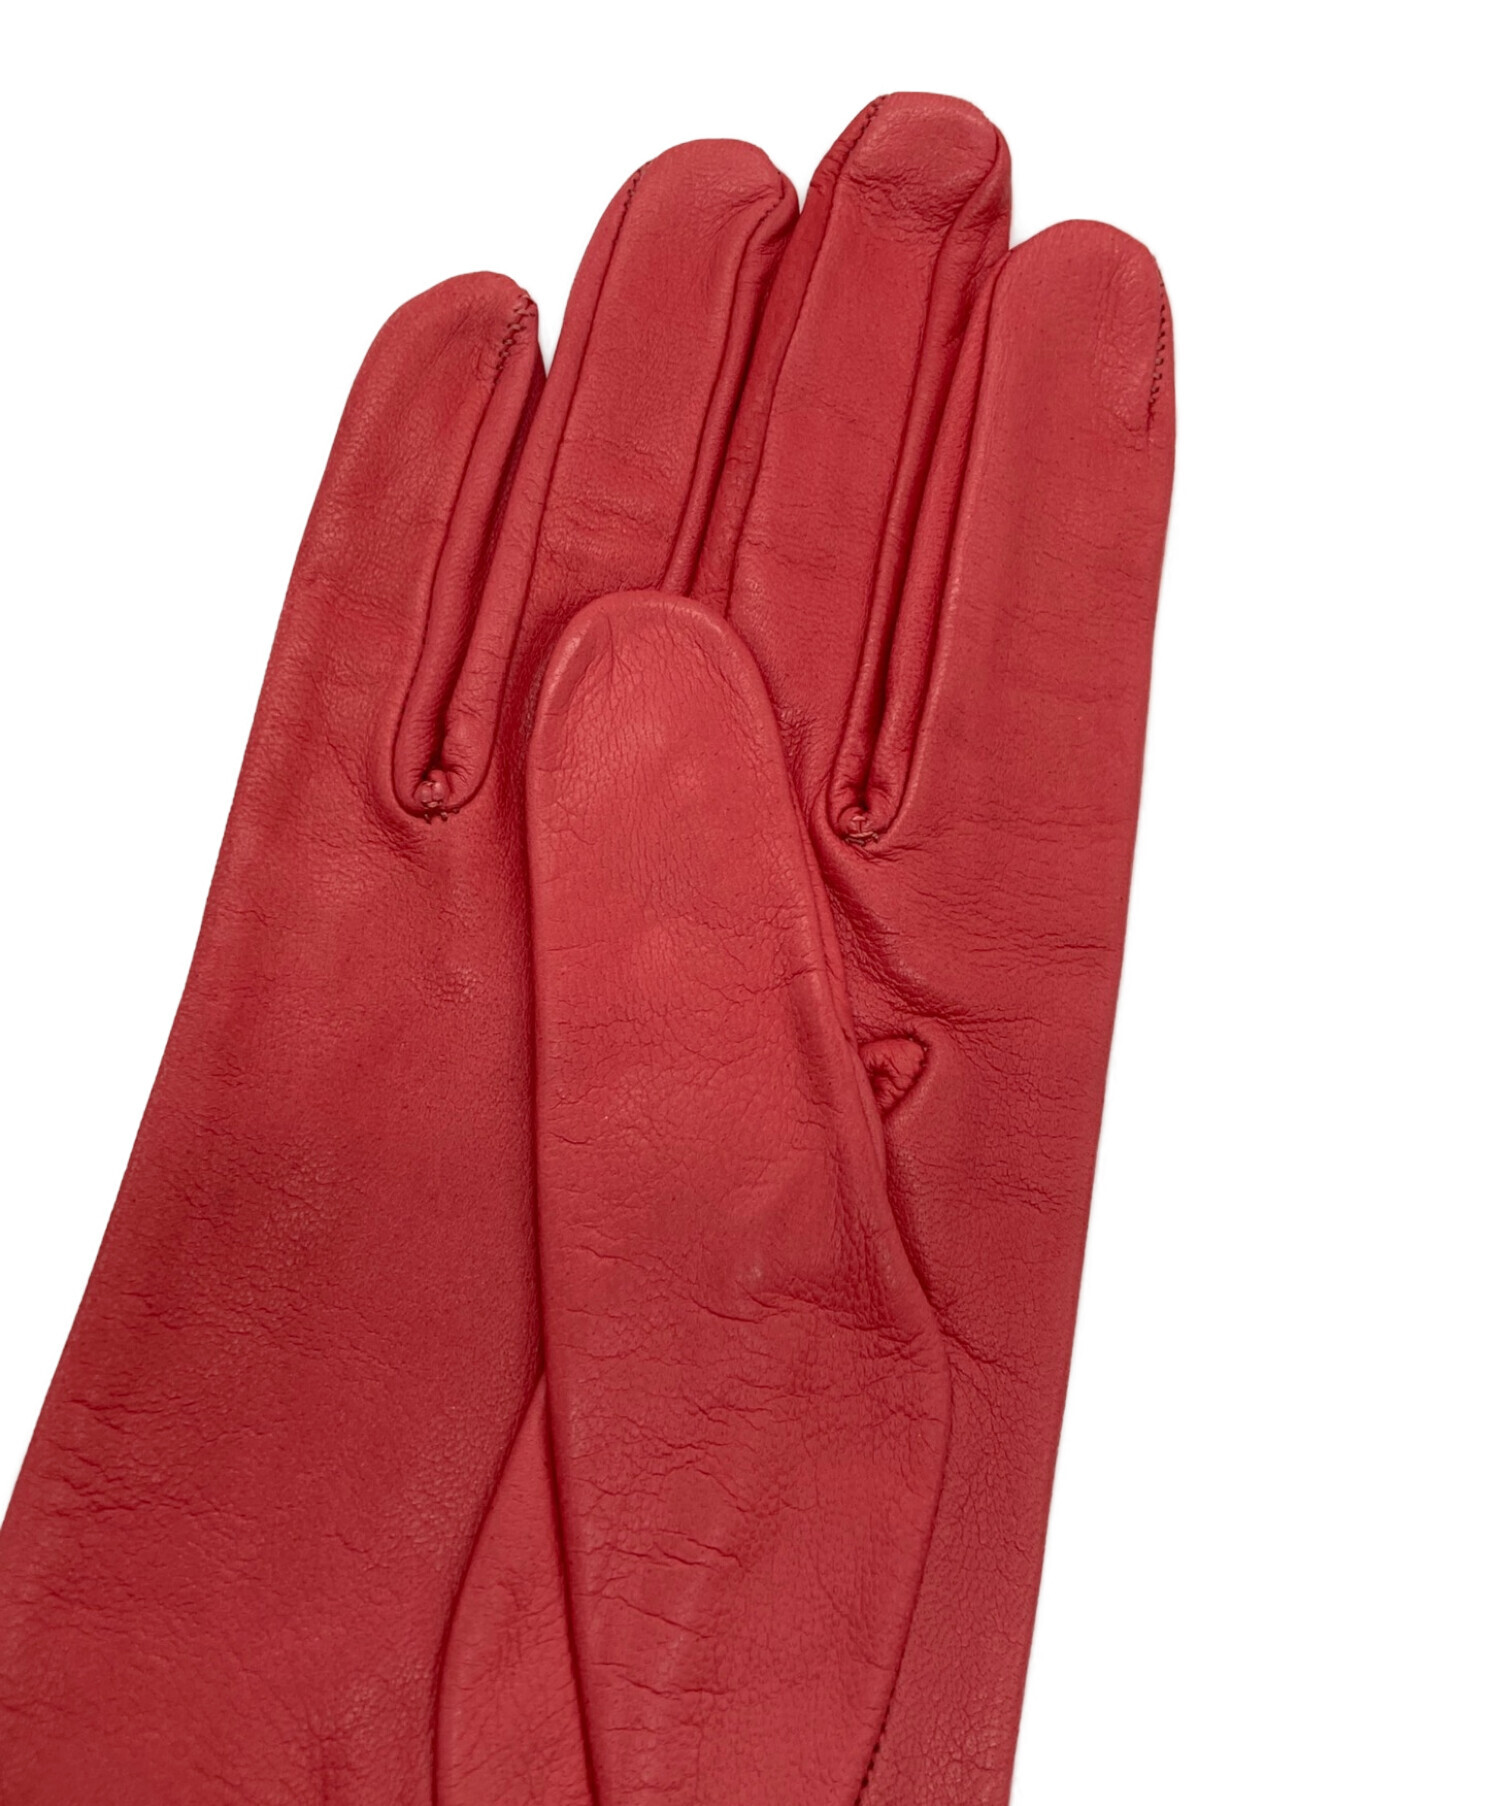 Sermoneta Gloves (セルモネータグローブス) レザーグローブ レッド 未使用品